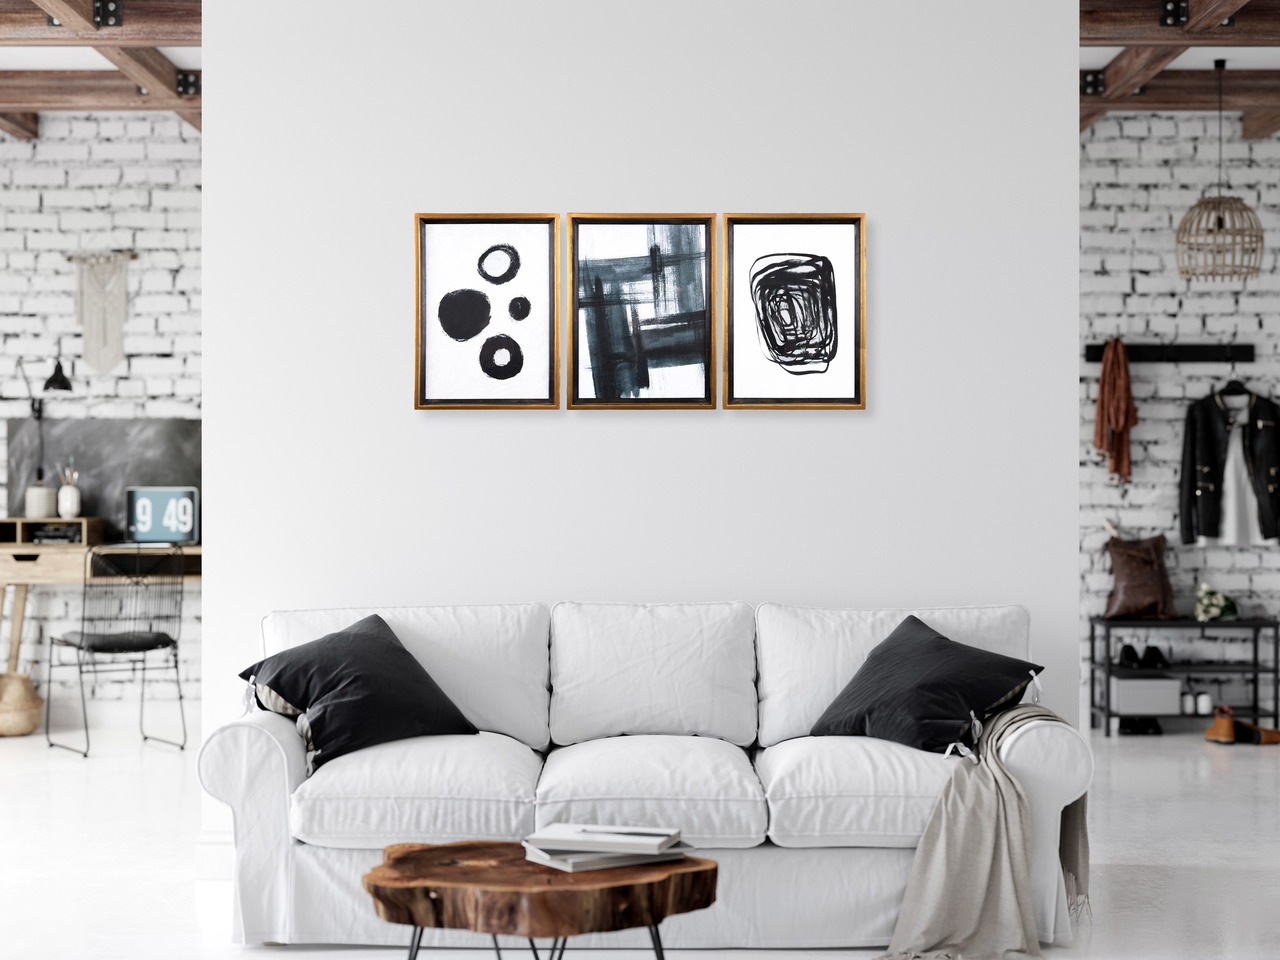 Black & White Abstract Framed Artwork, Set of 3 - Image 1